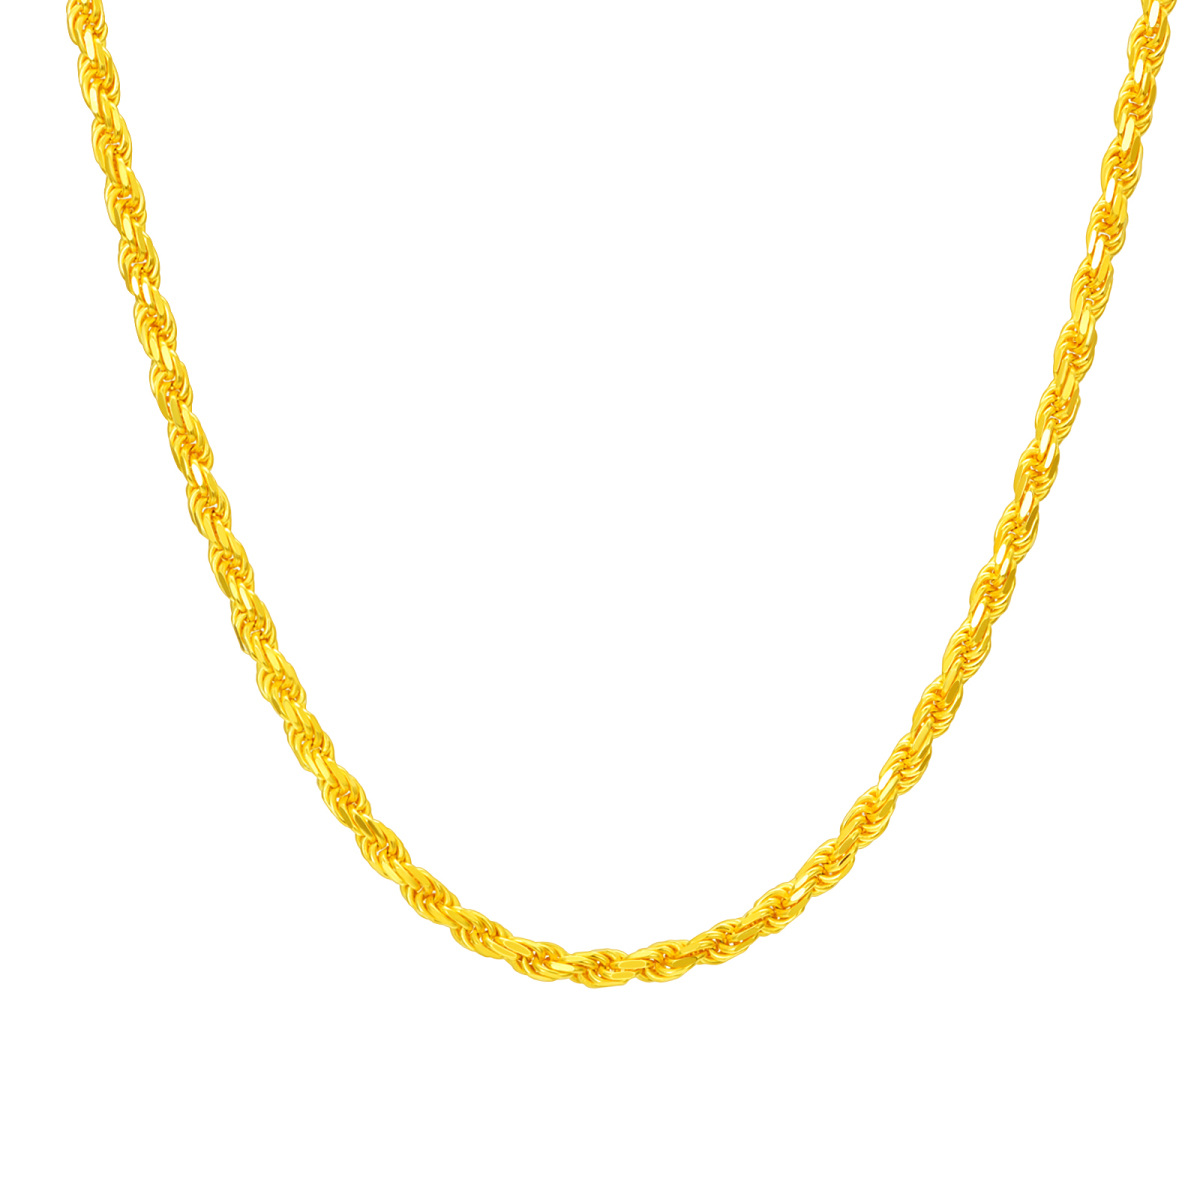 Halskette aus Edelstahl mit gelbvergoldeter Seilkette-1